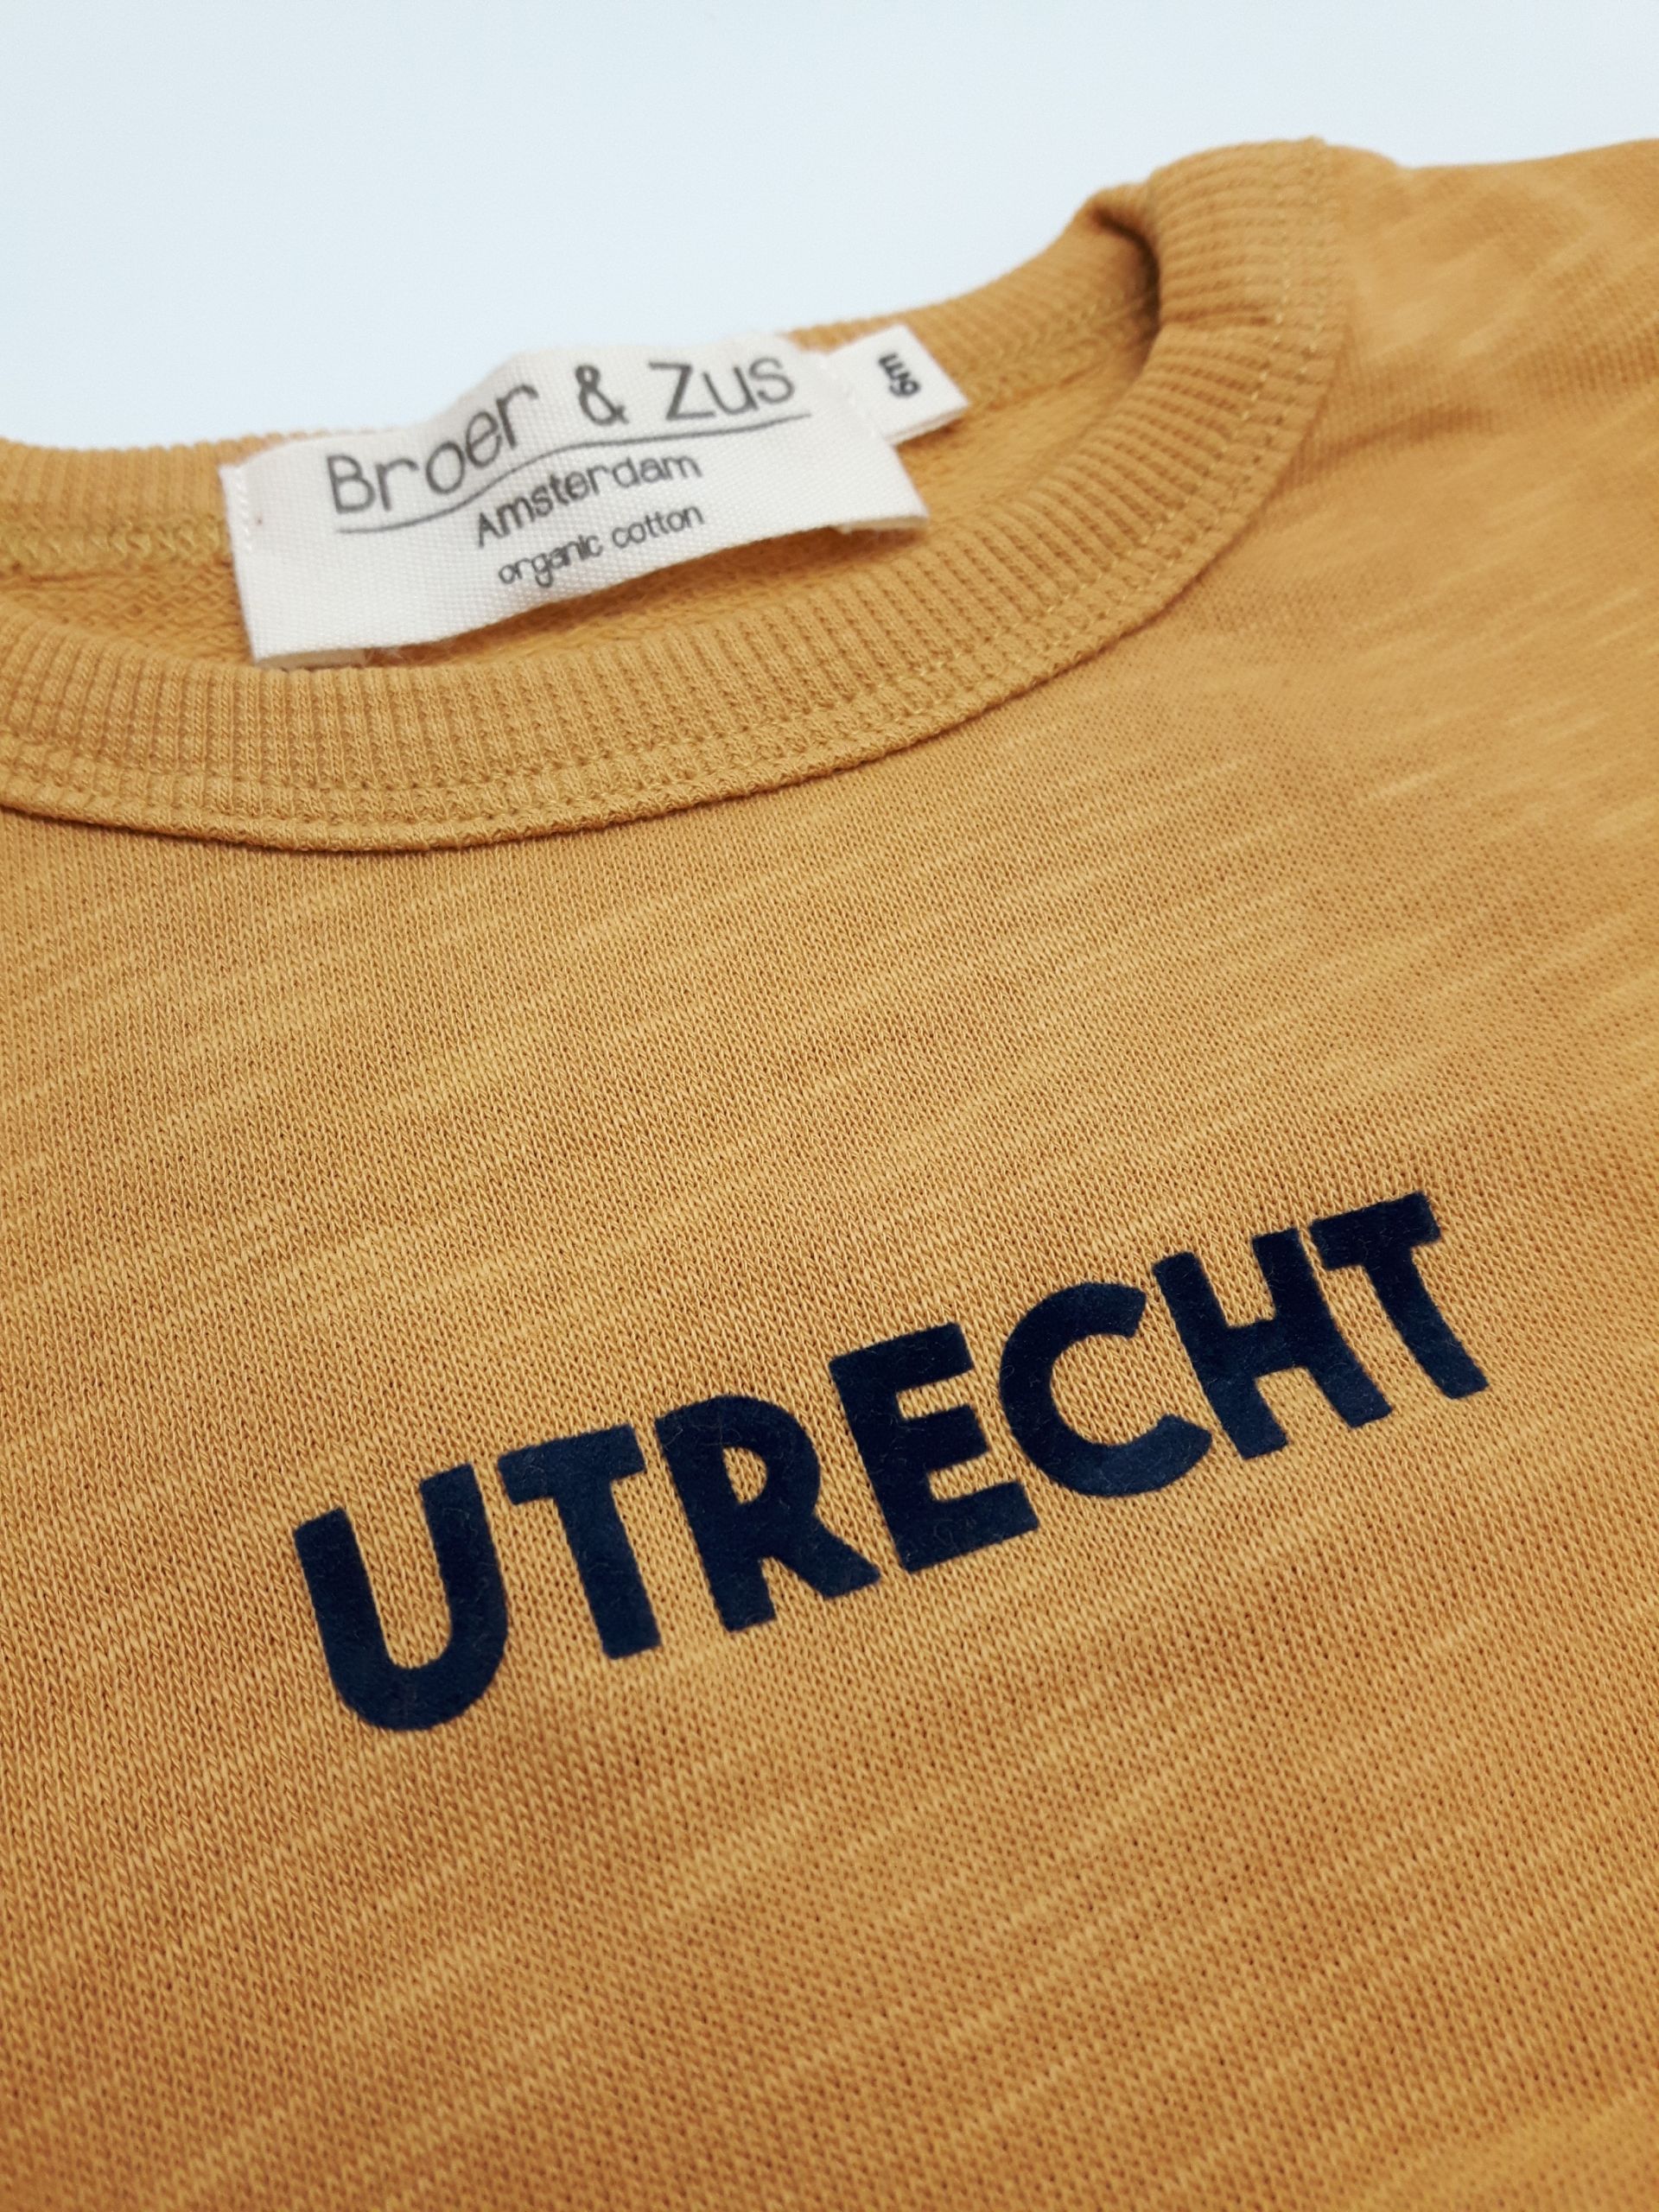 Sweater Utrecht mosterd navy flock 6 maanden